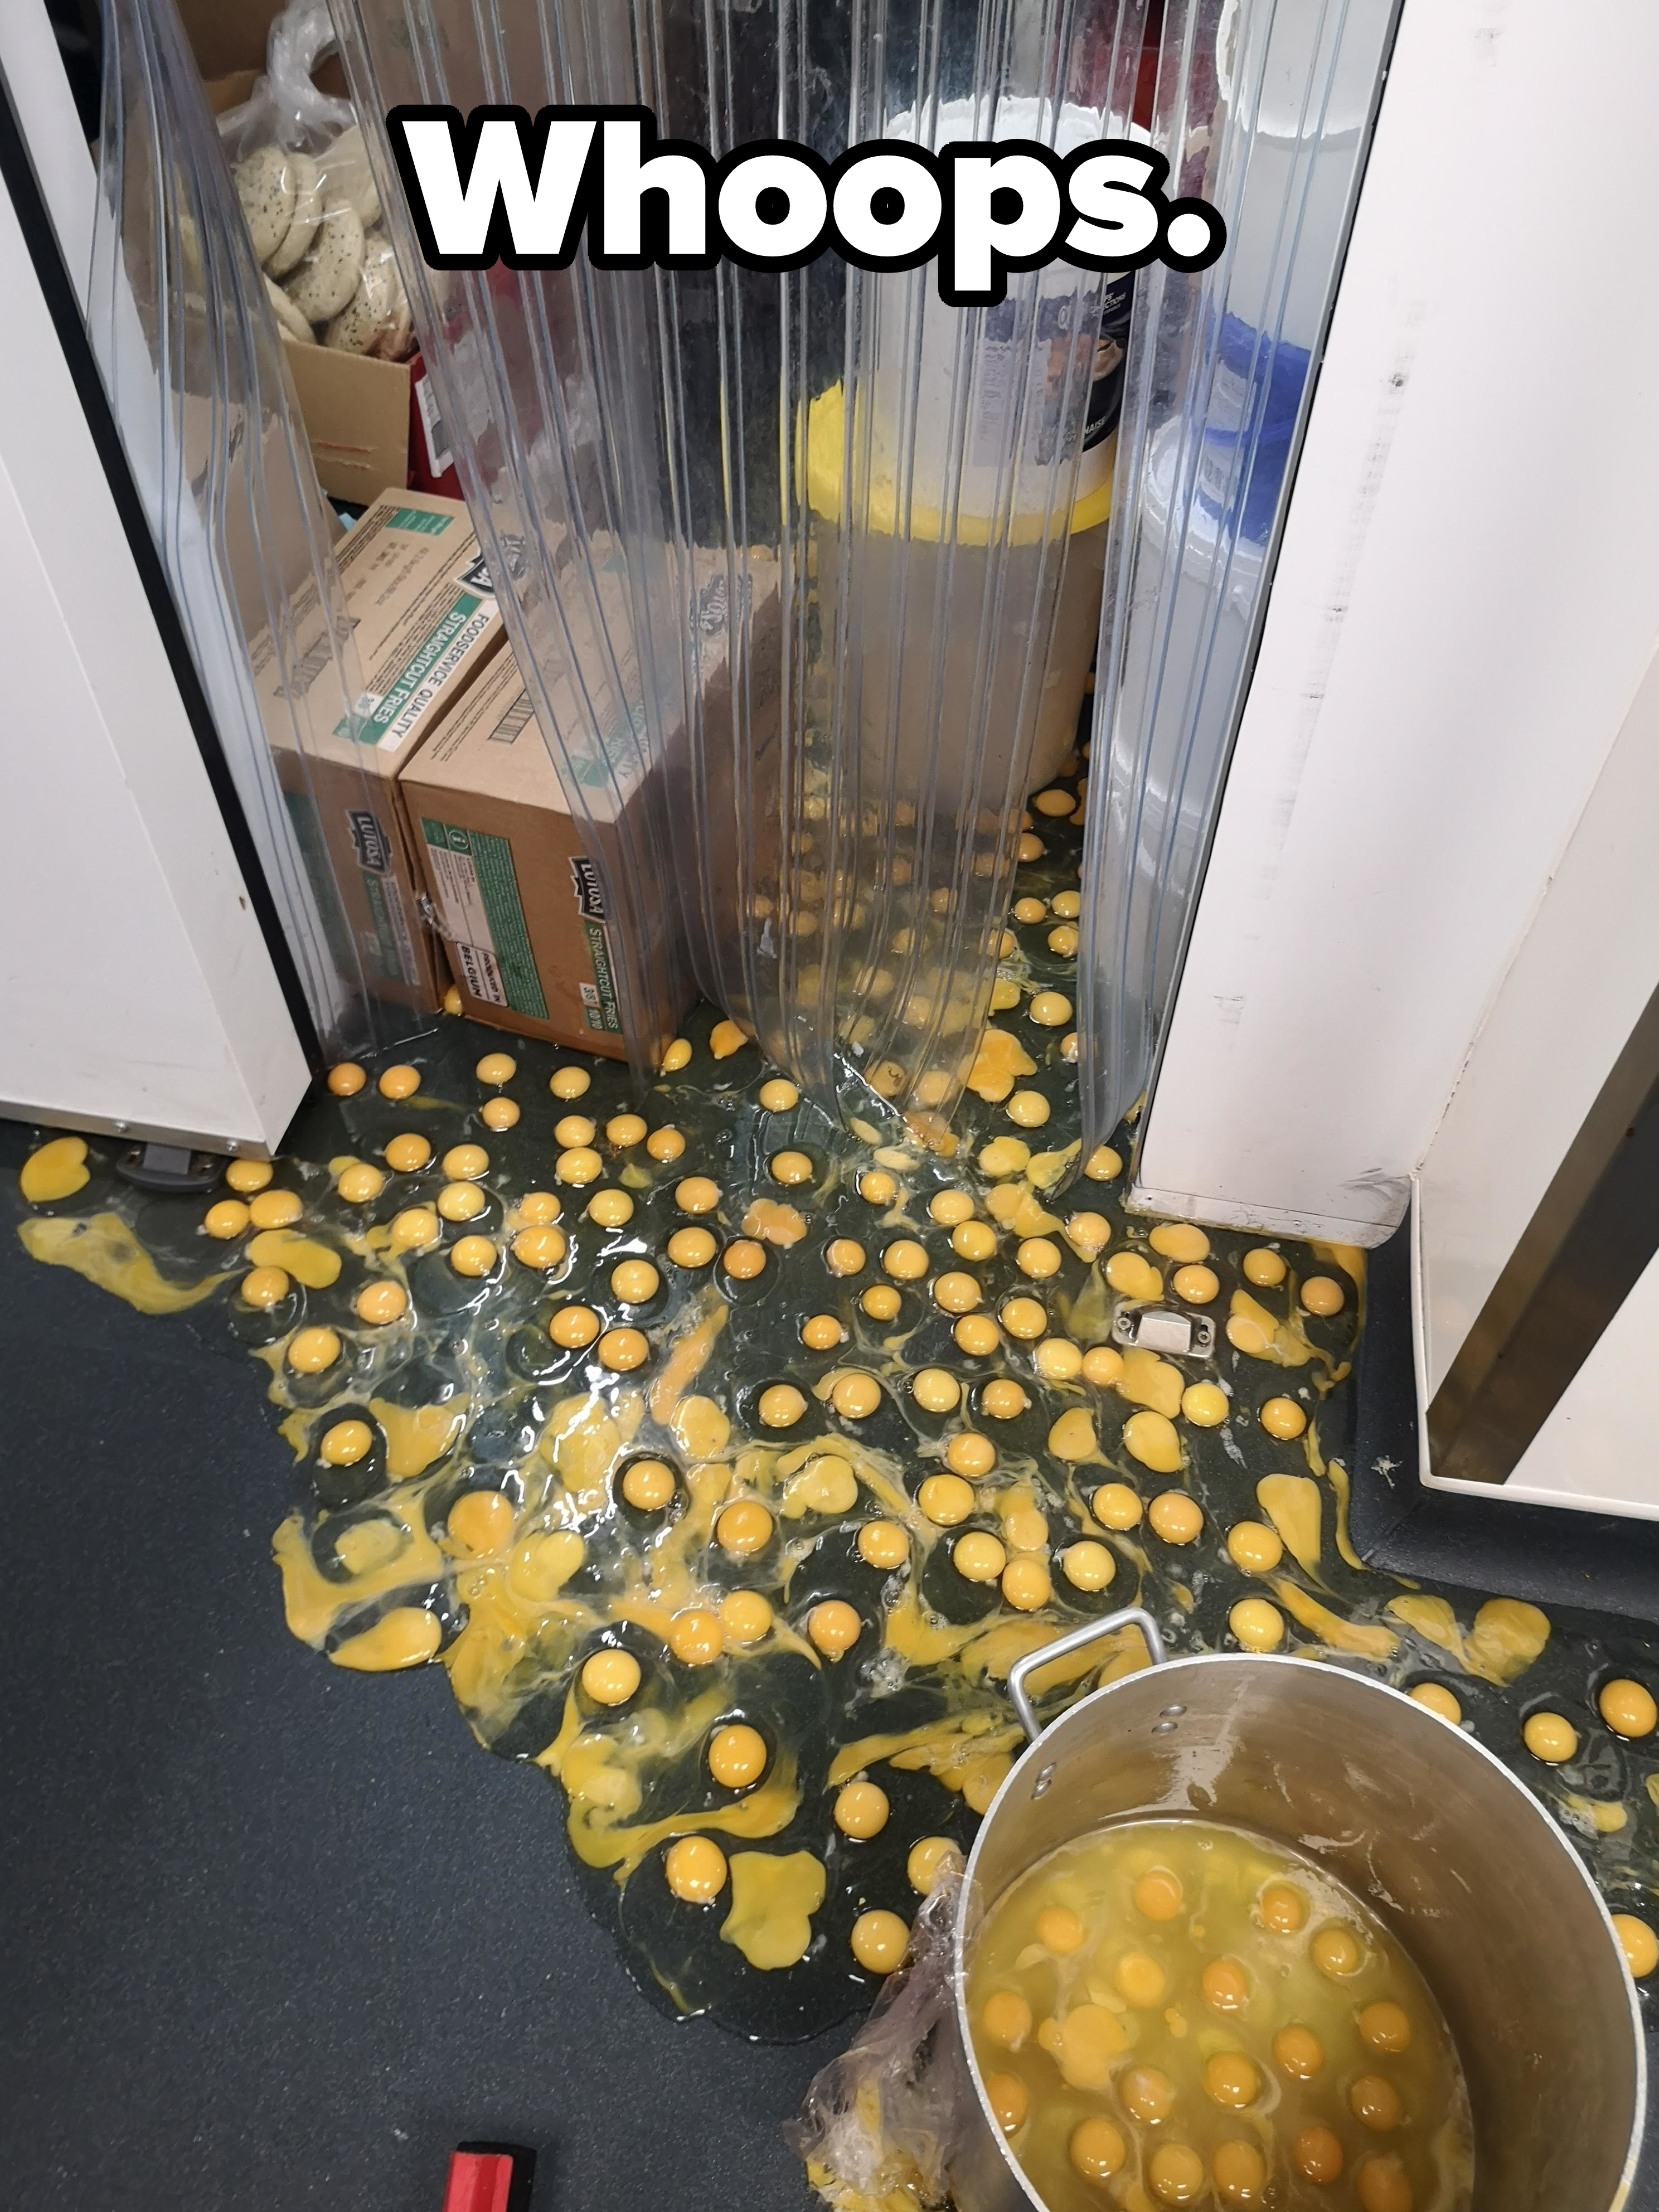 Spilled eggs on the floor